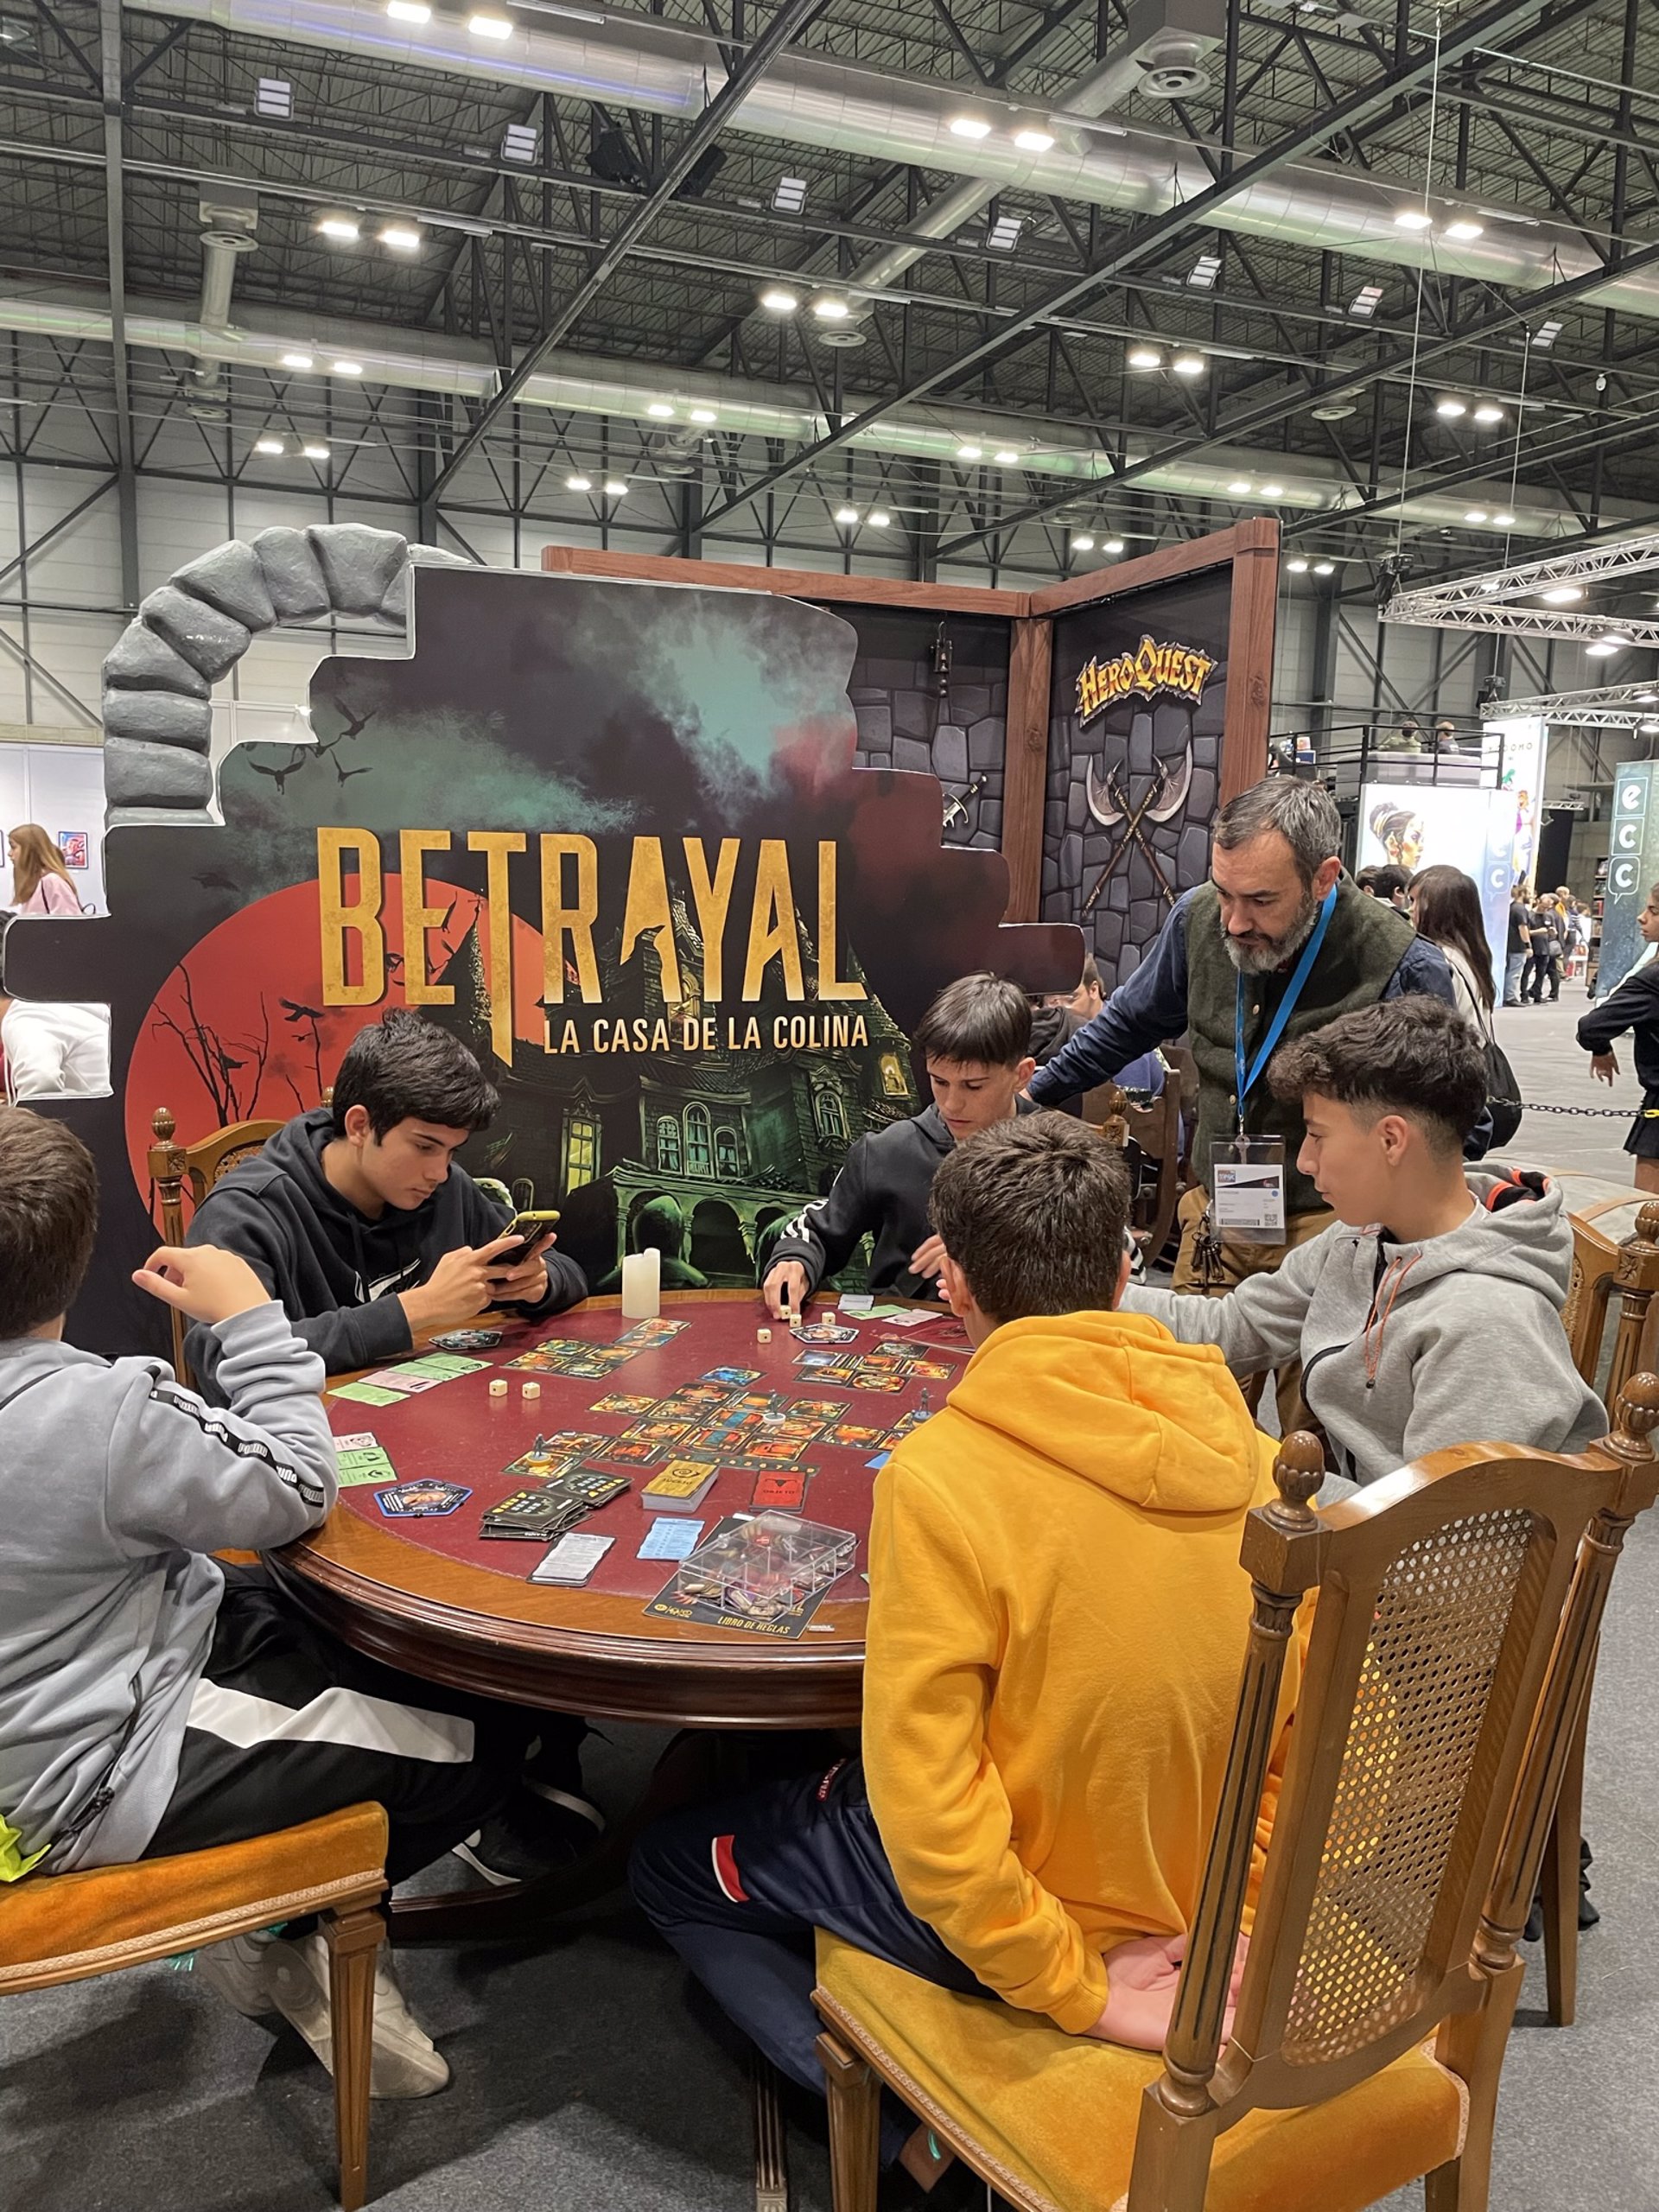 Betrayal, un juego adictivo